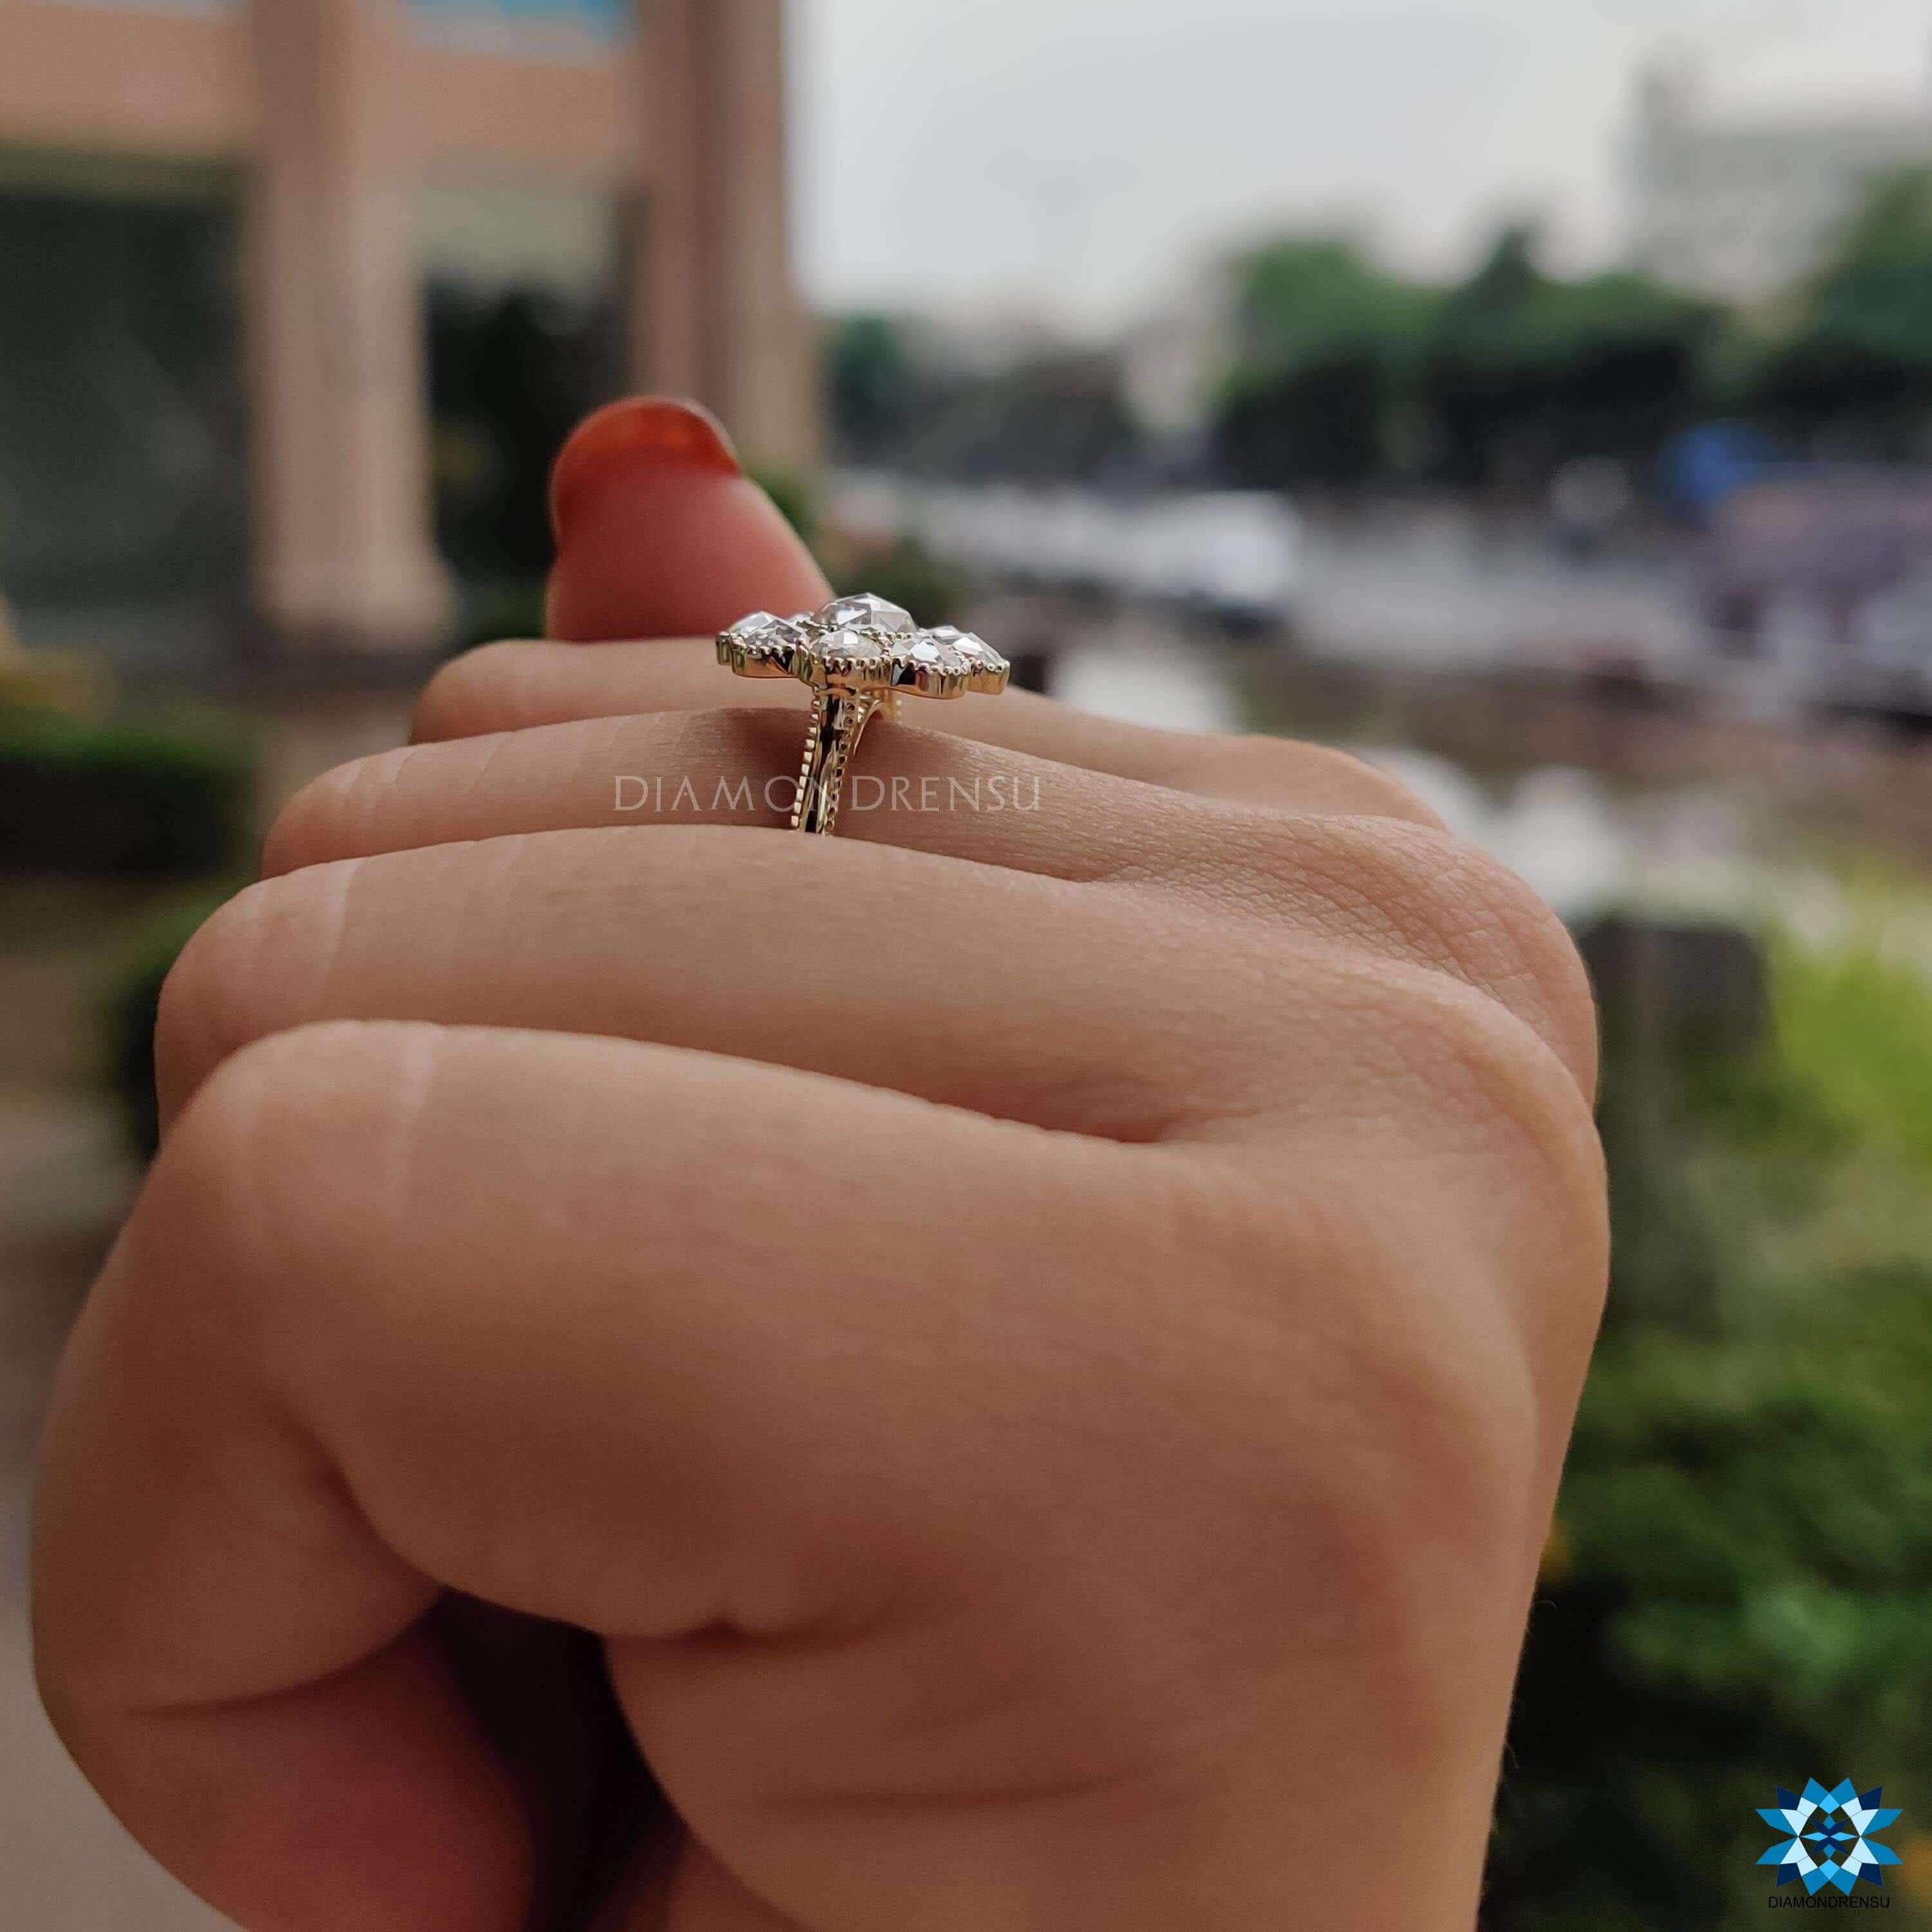 rose cut engagement rings - diamondrensu